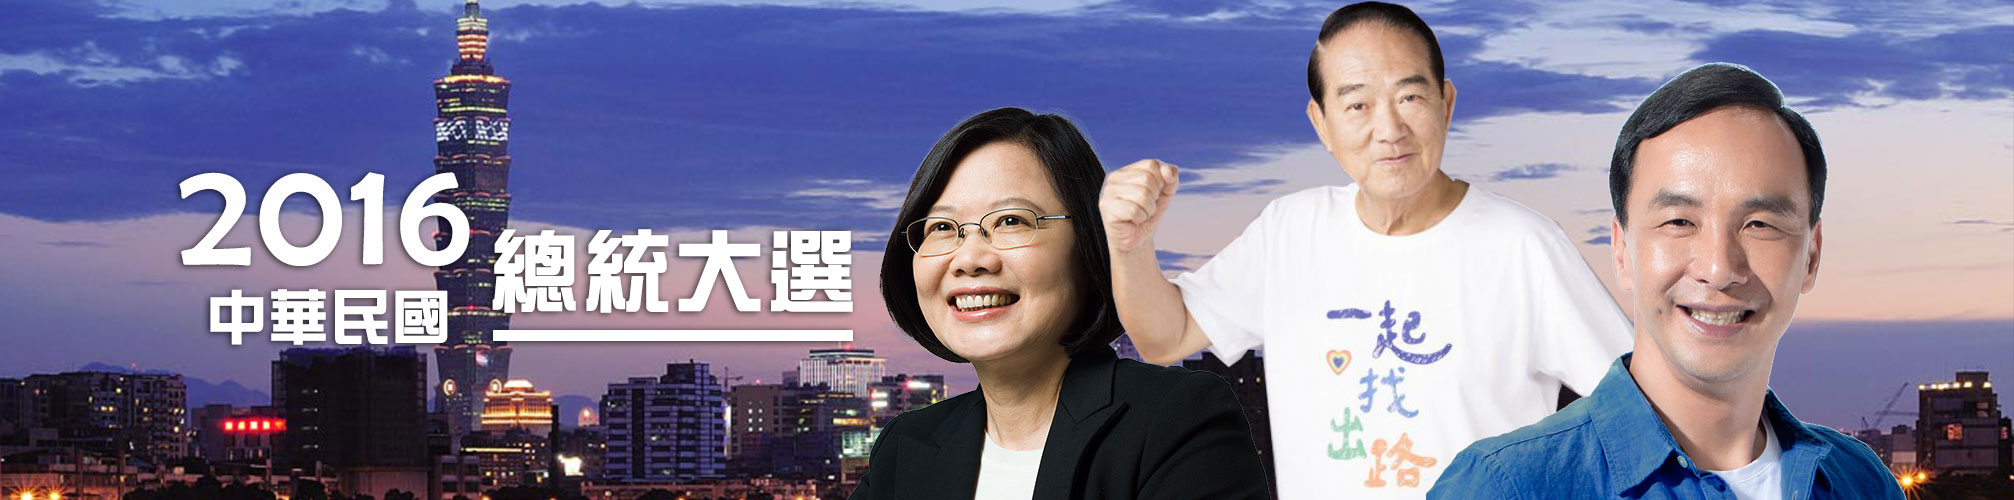 2016中華民國總統大選